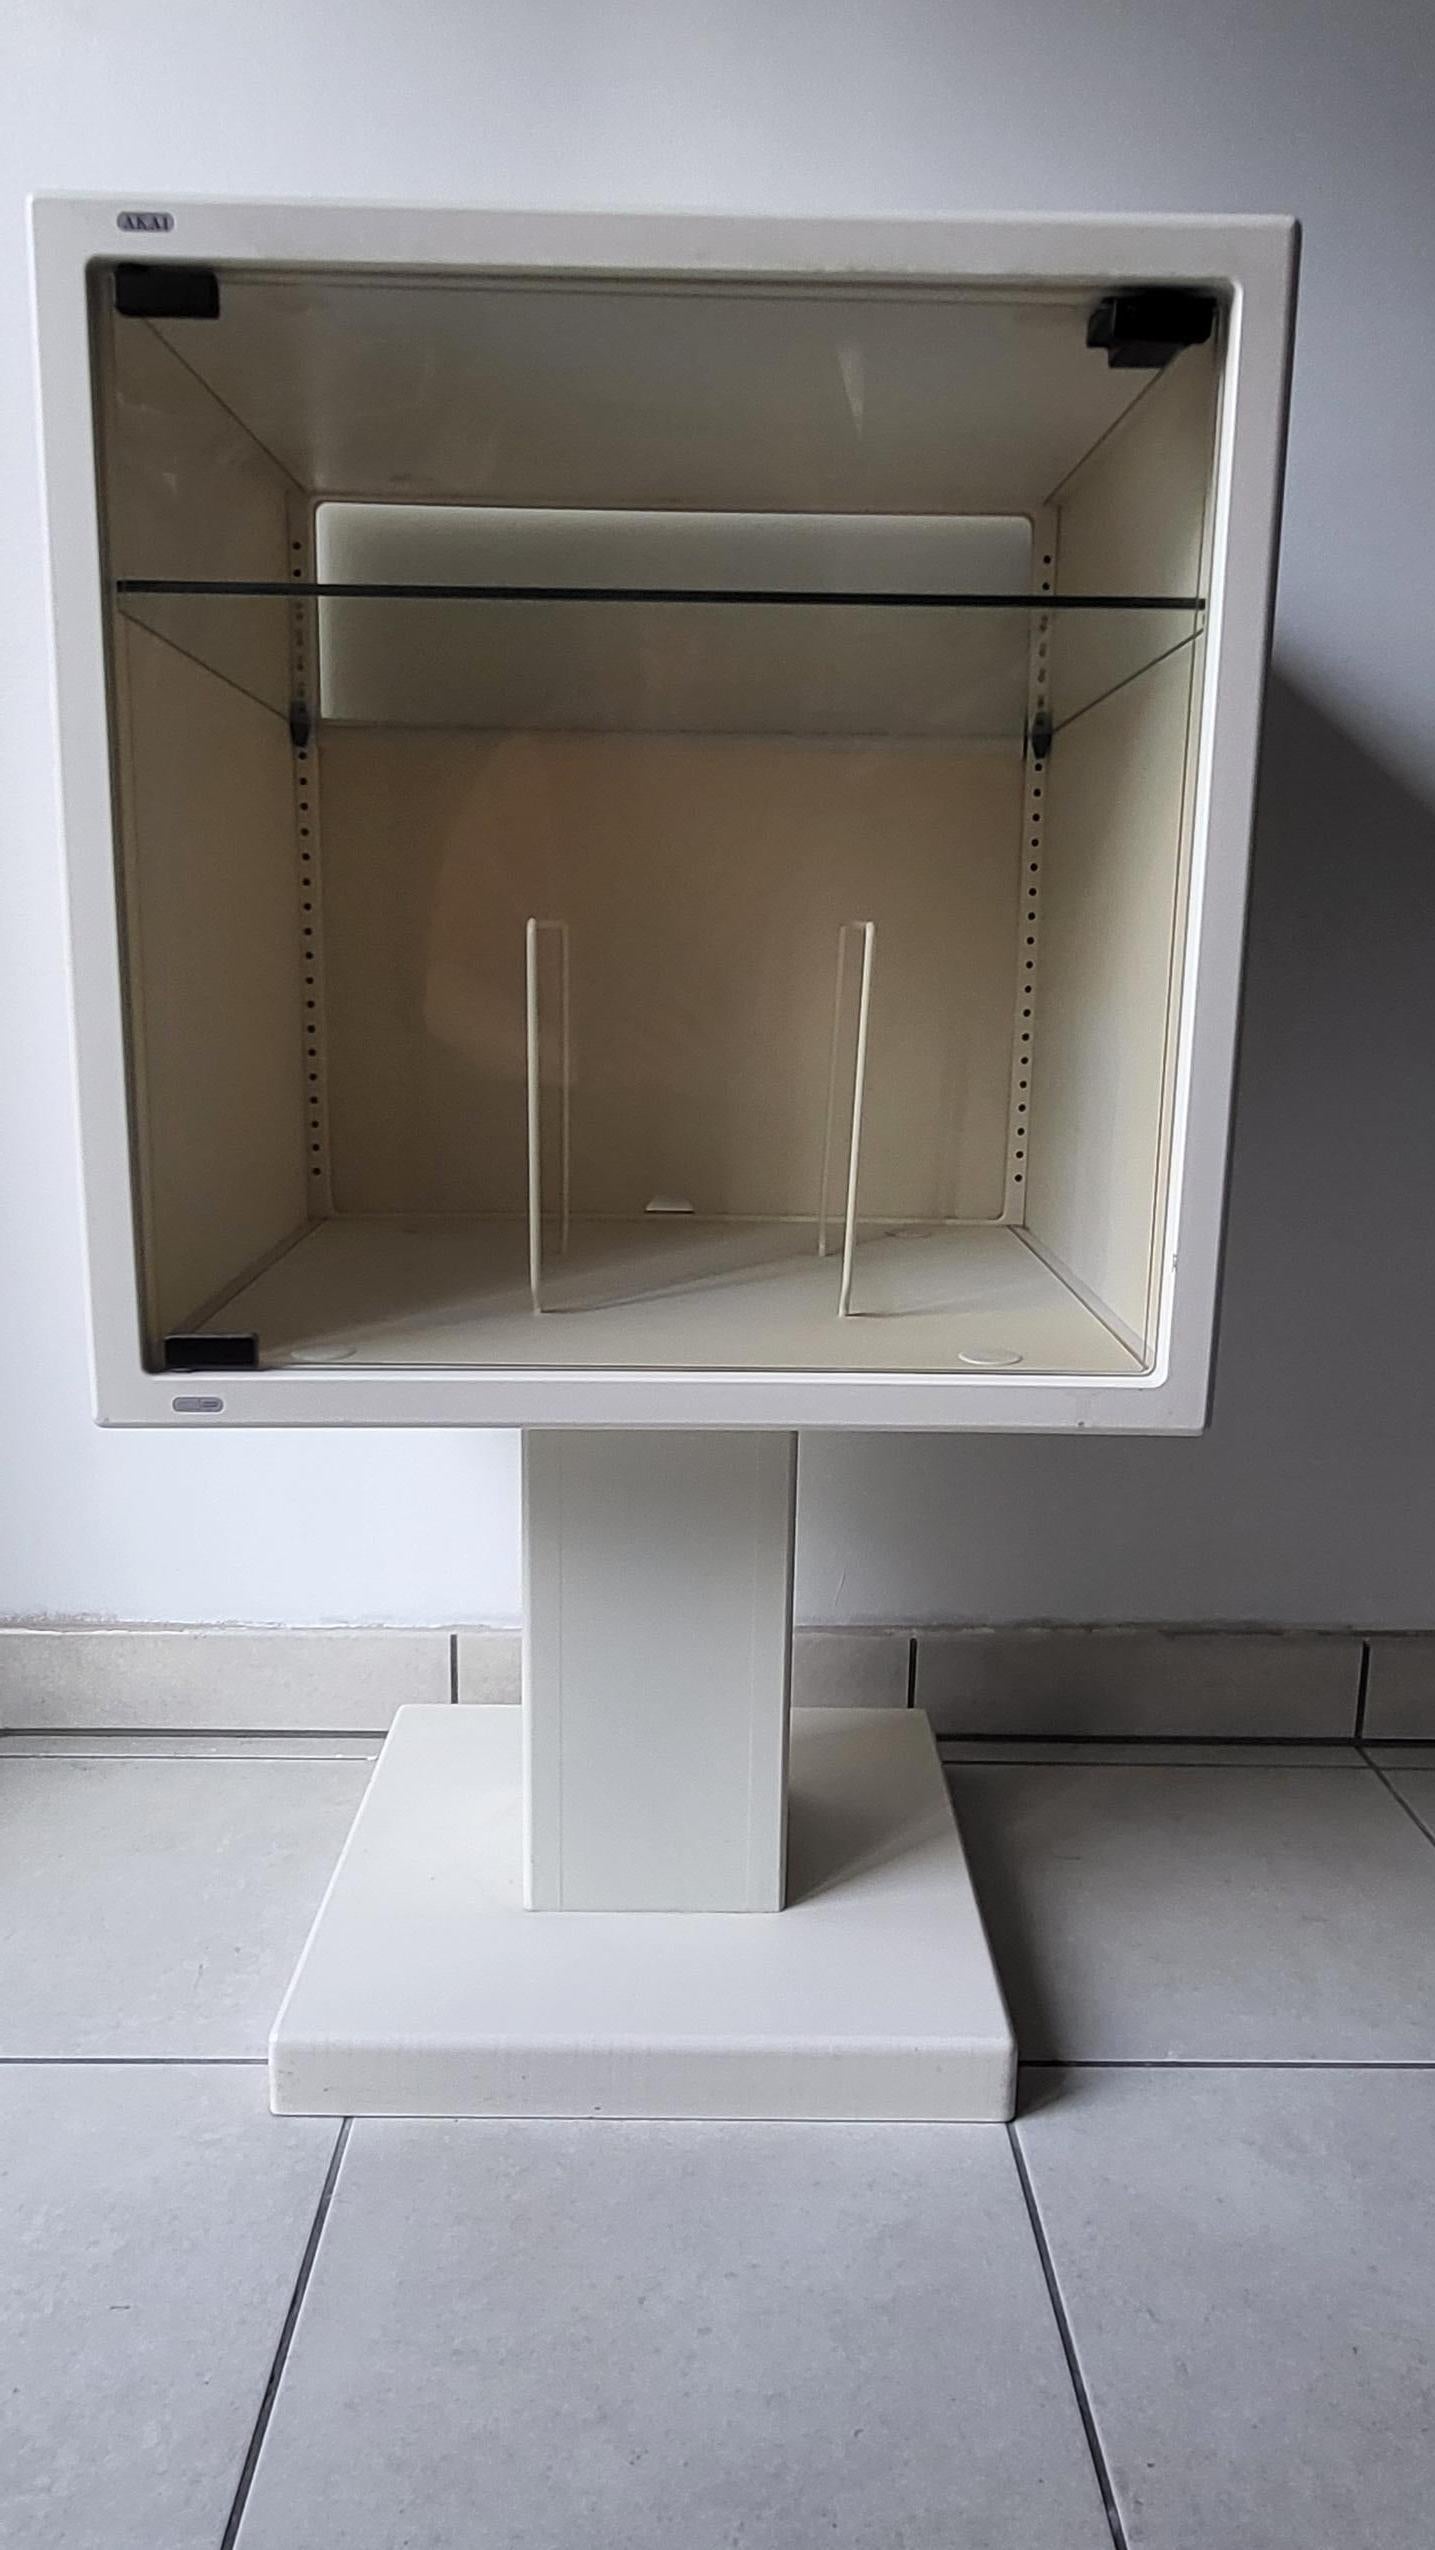 Meuble Hi-Fi AKAI CUBE de PB design. Fabriqué dans les années 1980, conçu avec une étagère à l'intérieur en verre qui sert de support pour la platine vinyle et le compartiment en dessous pour les disques.

Ces meubles sont rares et uniques, certains